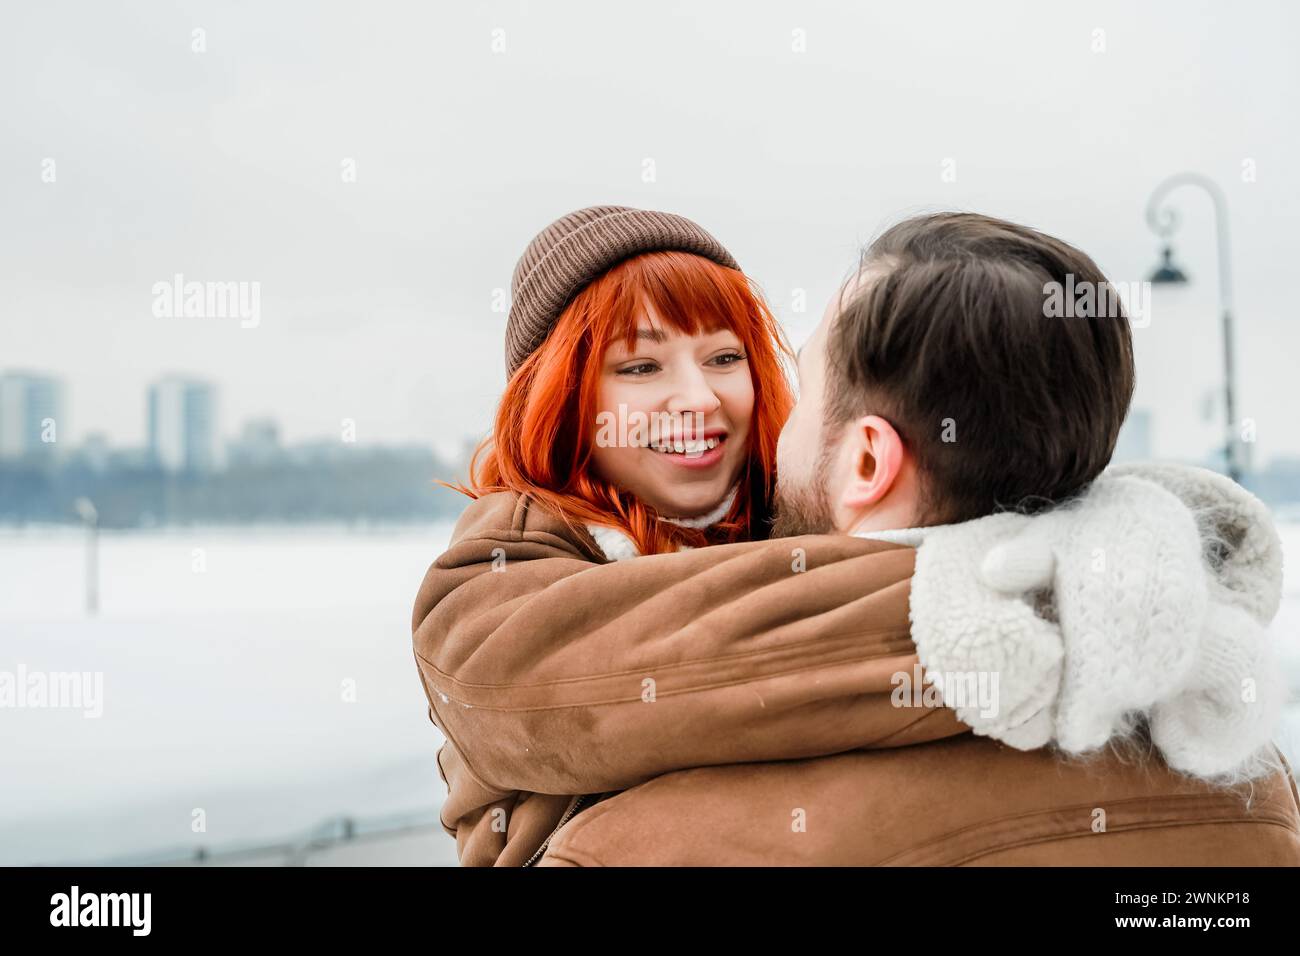 Amore romantico soggiorno di coppia. Brutale uomo barbuto, brillante ragazza dai capelli rossi nel parco invernale. Appuntamento romantico, baci, abbracci. Camminare, divertirsi. Foto Stock